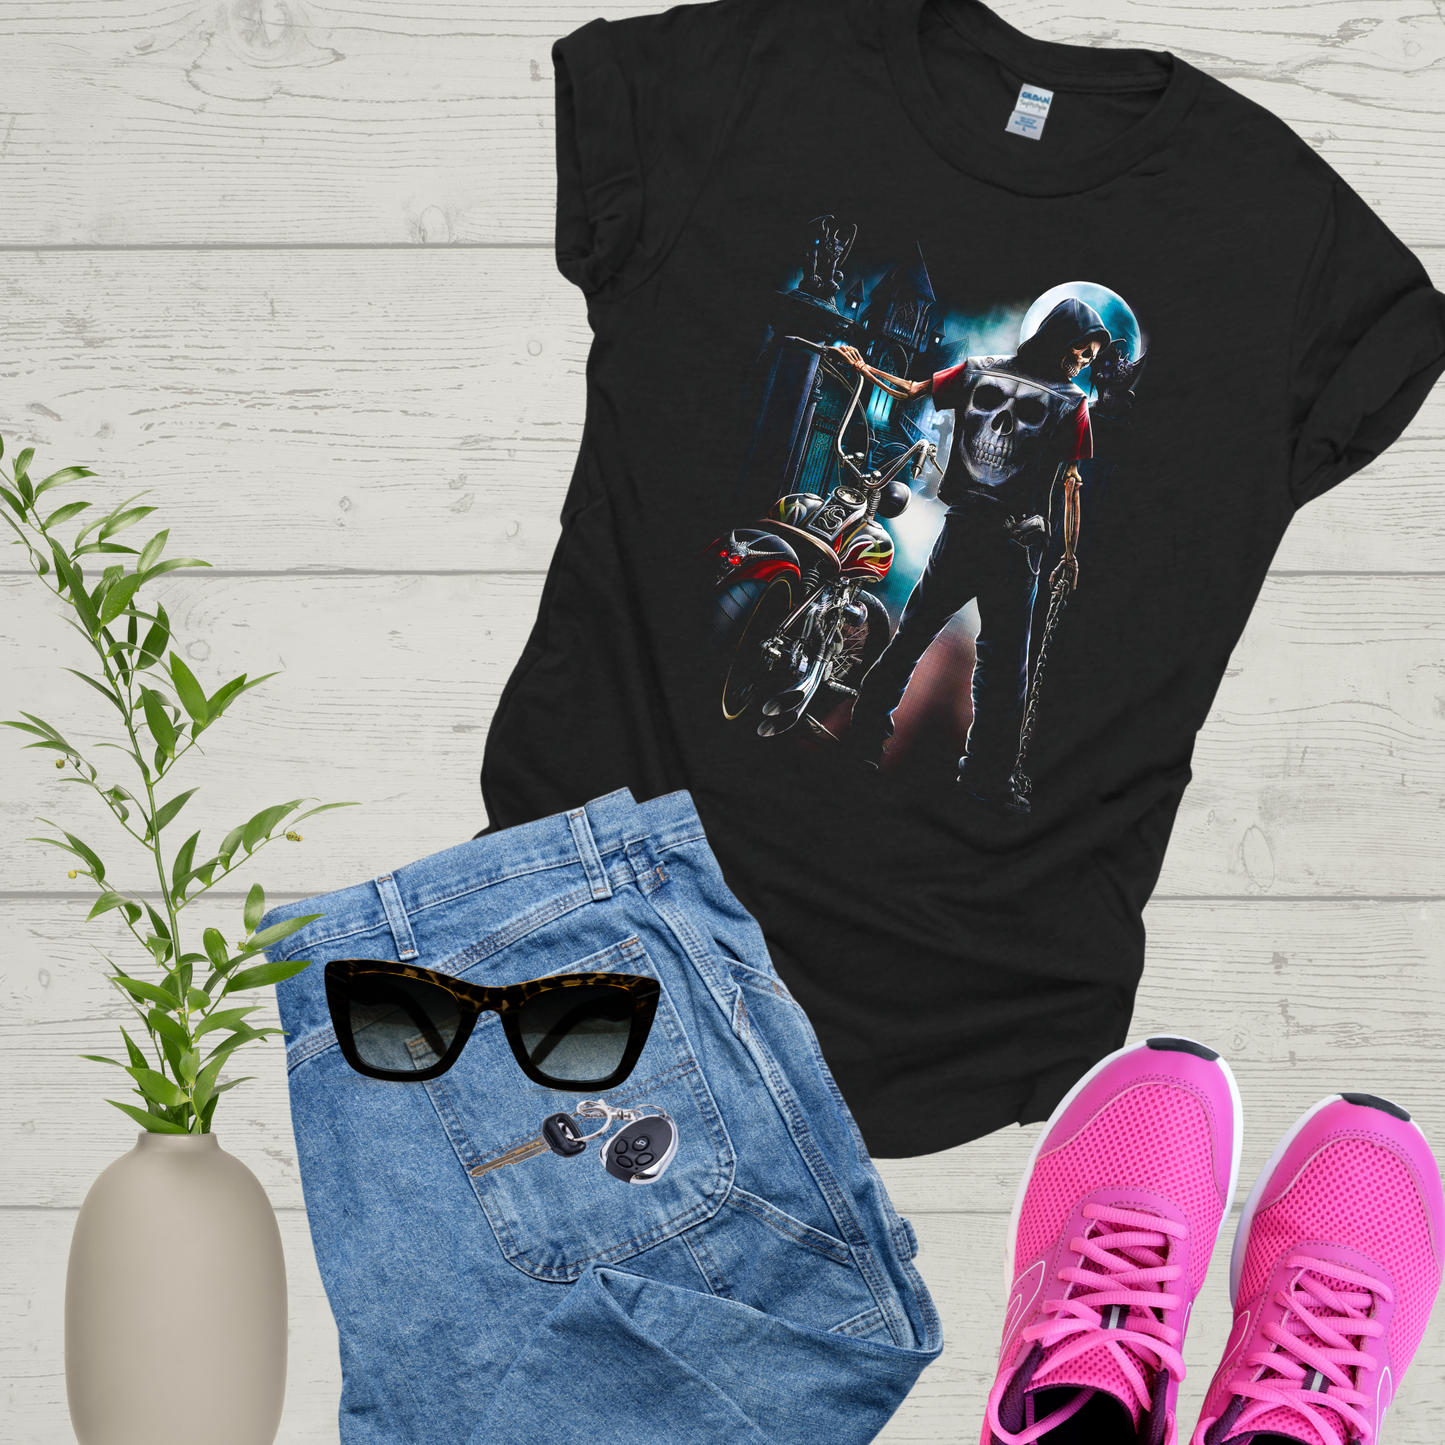 Ghost Rider Skeleton Tshirt, Skeleton on Bike, Biker T-shirt, Skull Goth Artwork